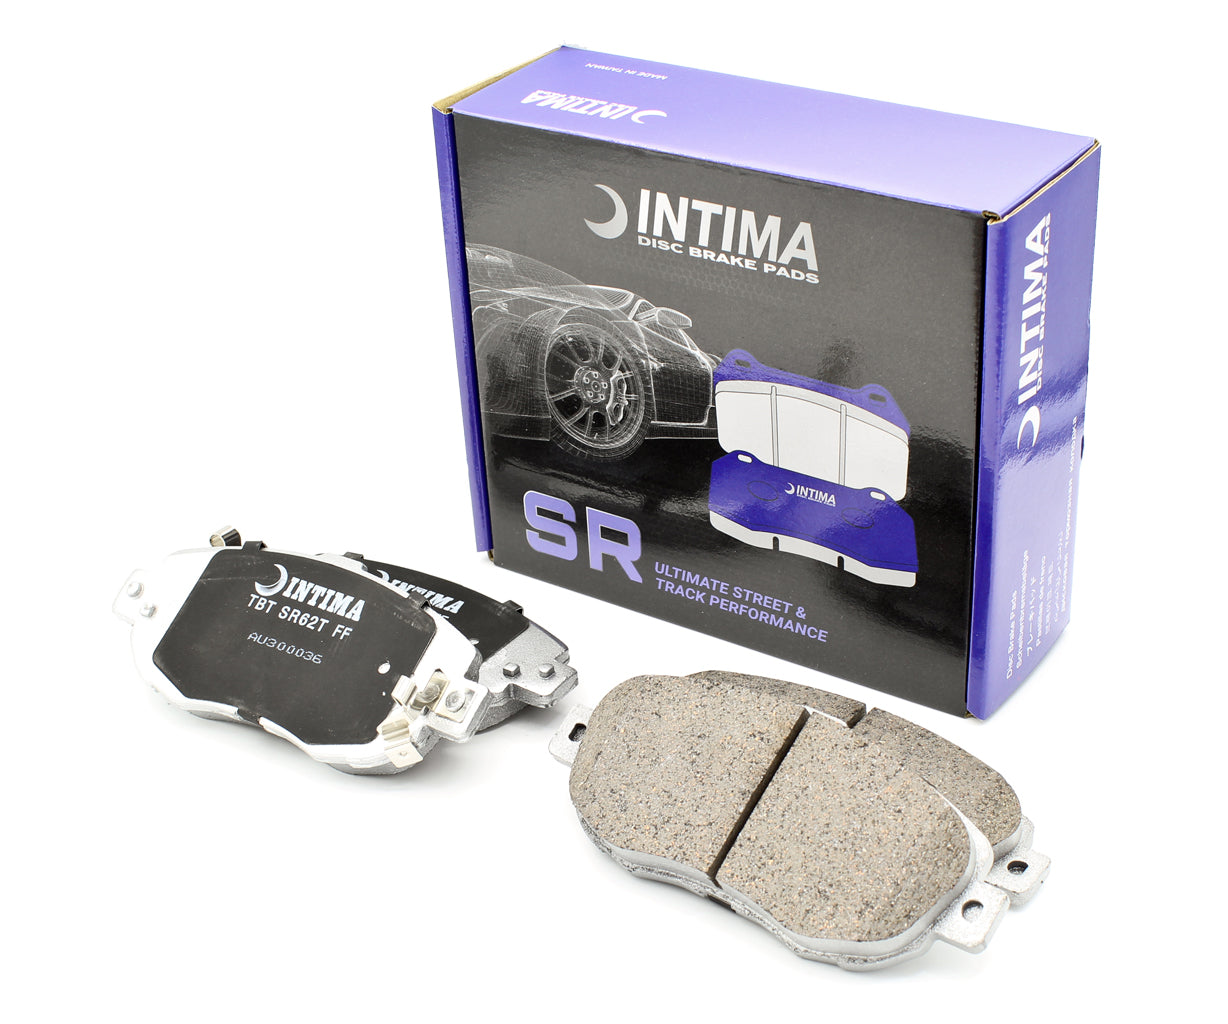 Intima SR Front Brake Pads – IS200/IS300, JZX100, JZX110, JZA80 Supra 2-Pot